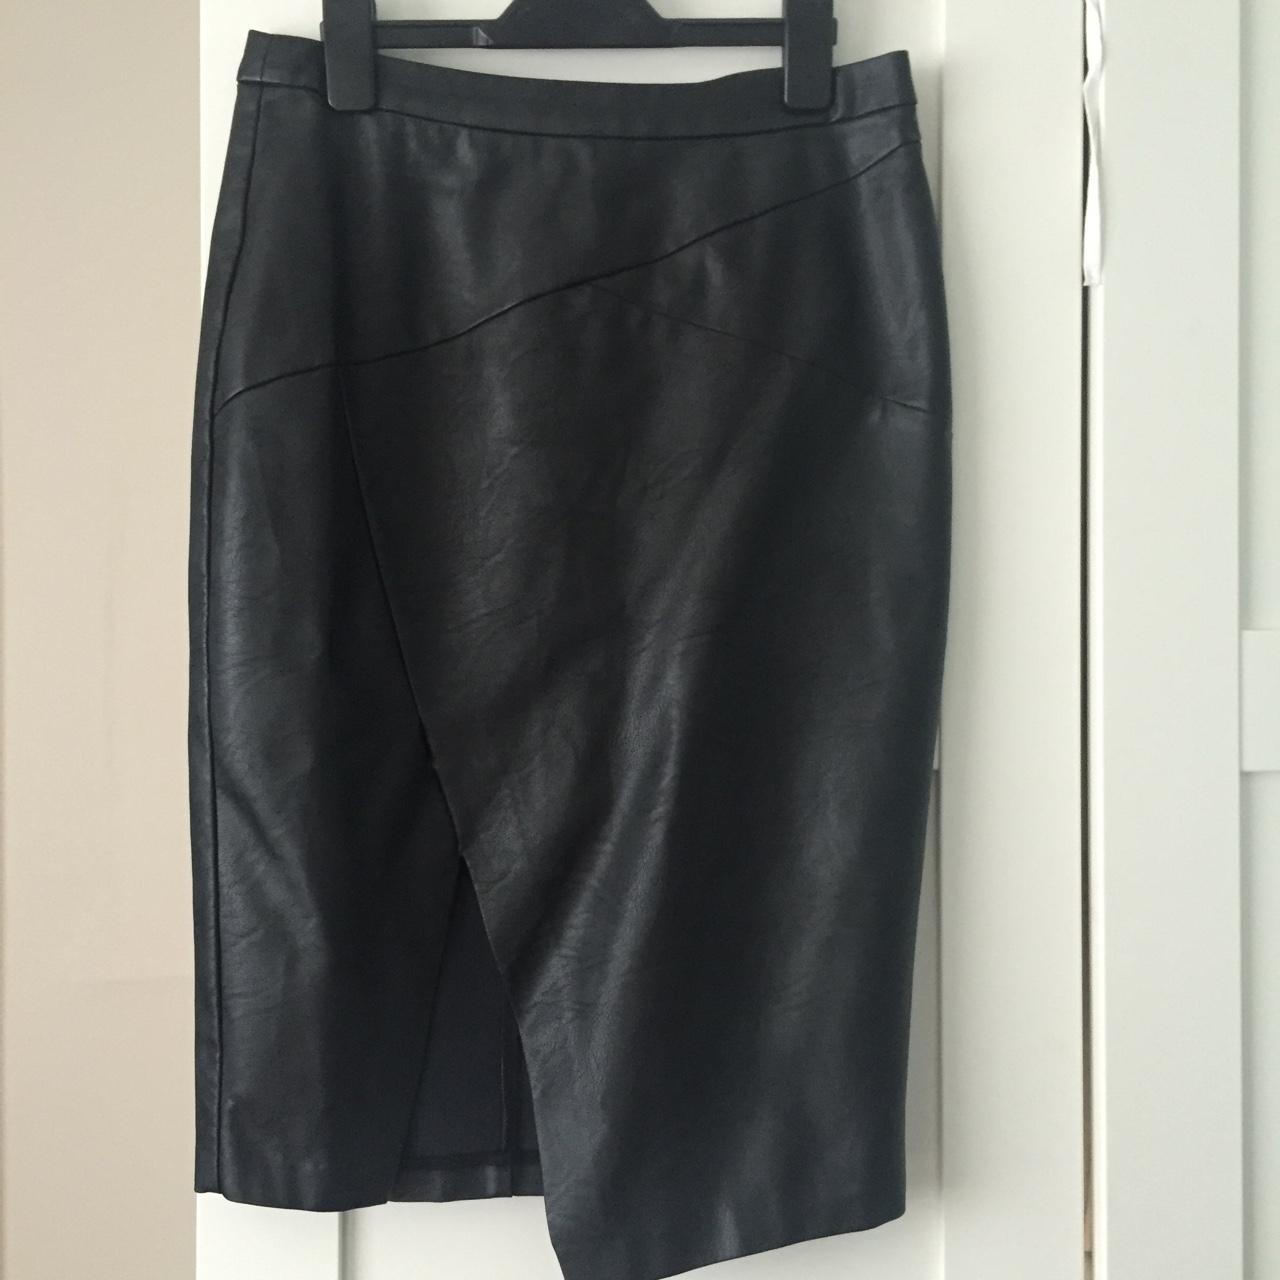 Oasis leather wrap skirt in size 10. Slight tear in... - Depop